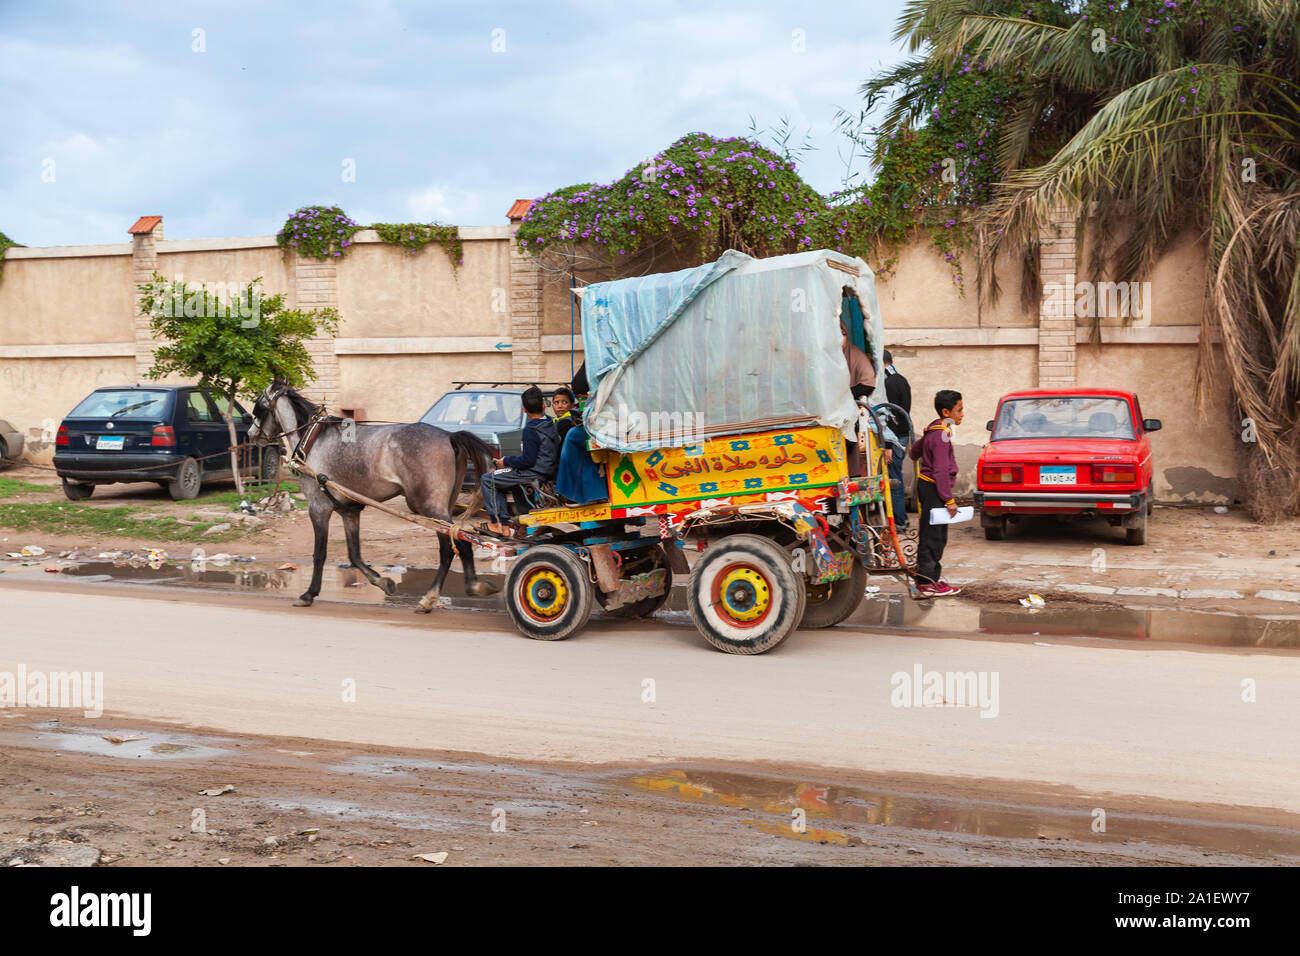 Alexandria, Ägypten - Dezember 20, 2018: von Pferden gezogene Wagen mit Passagieren und Coachman reitet auf einem schmutzigen nassen Straße von Alexandria Stockfoto